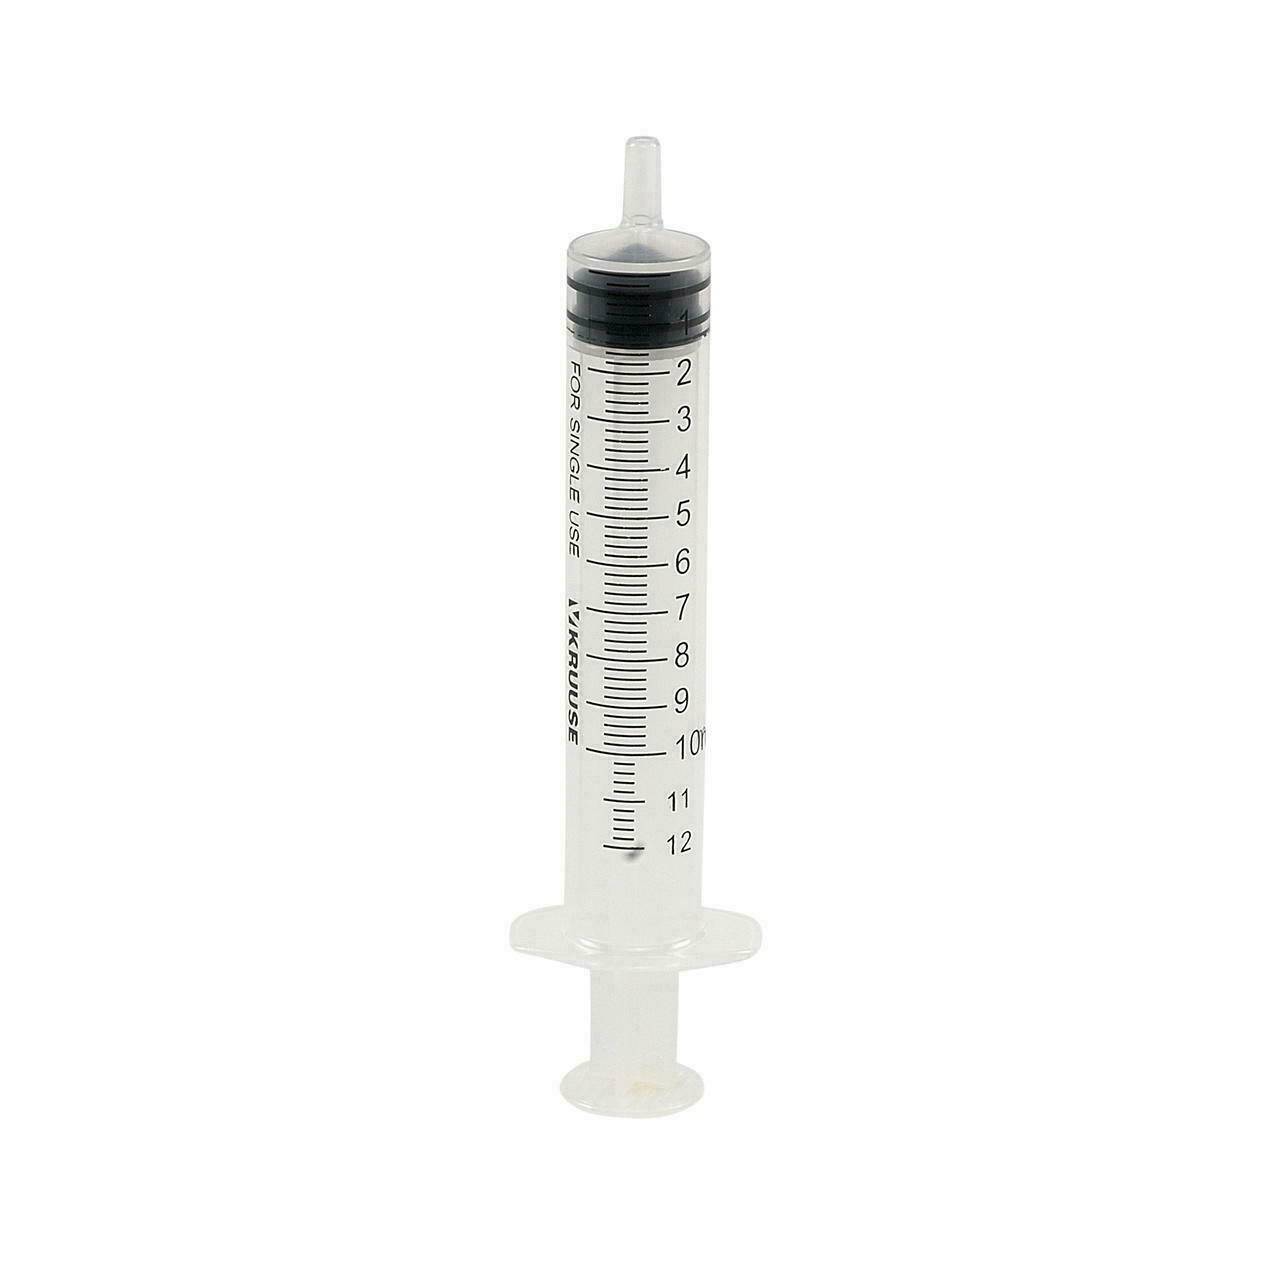 10ml Kruuse Luer Slip Veterinary Syringe - UKMEDI